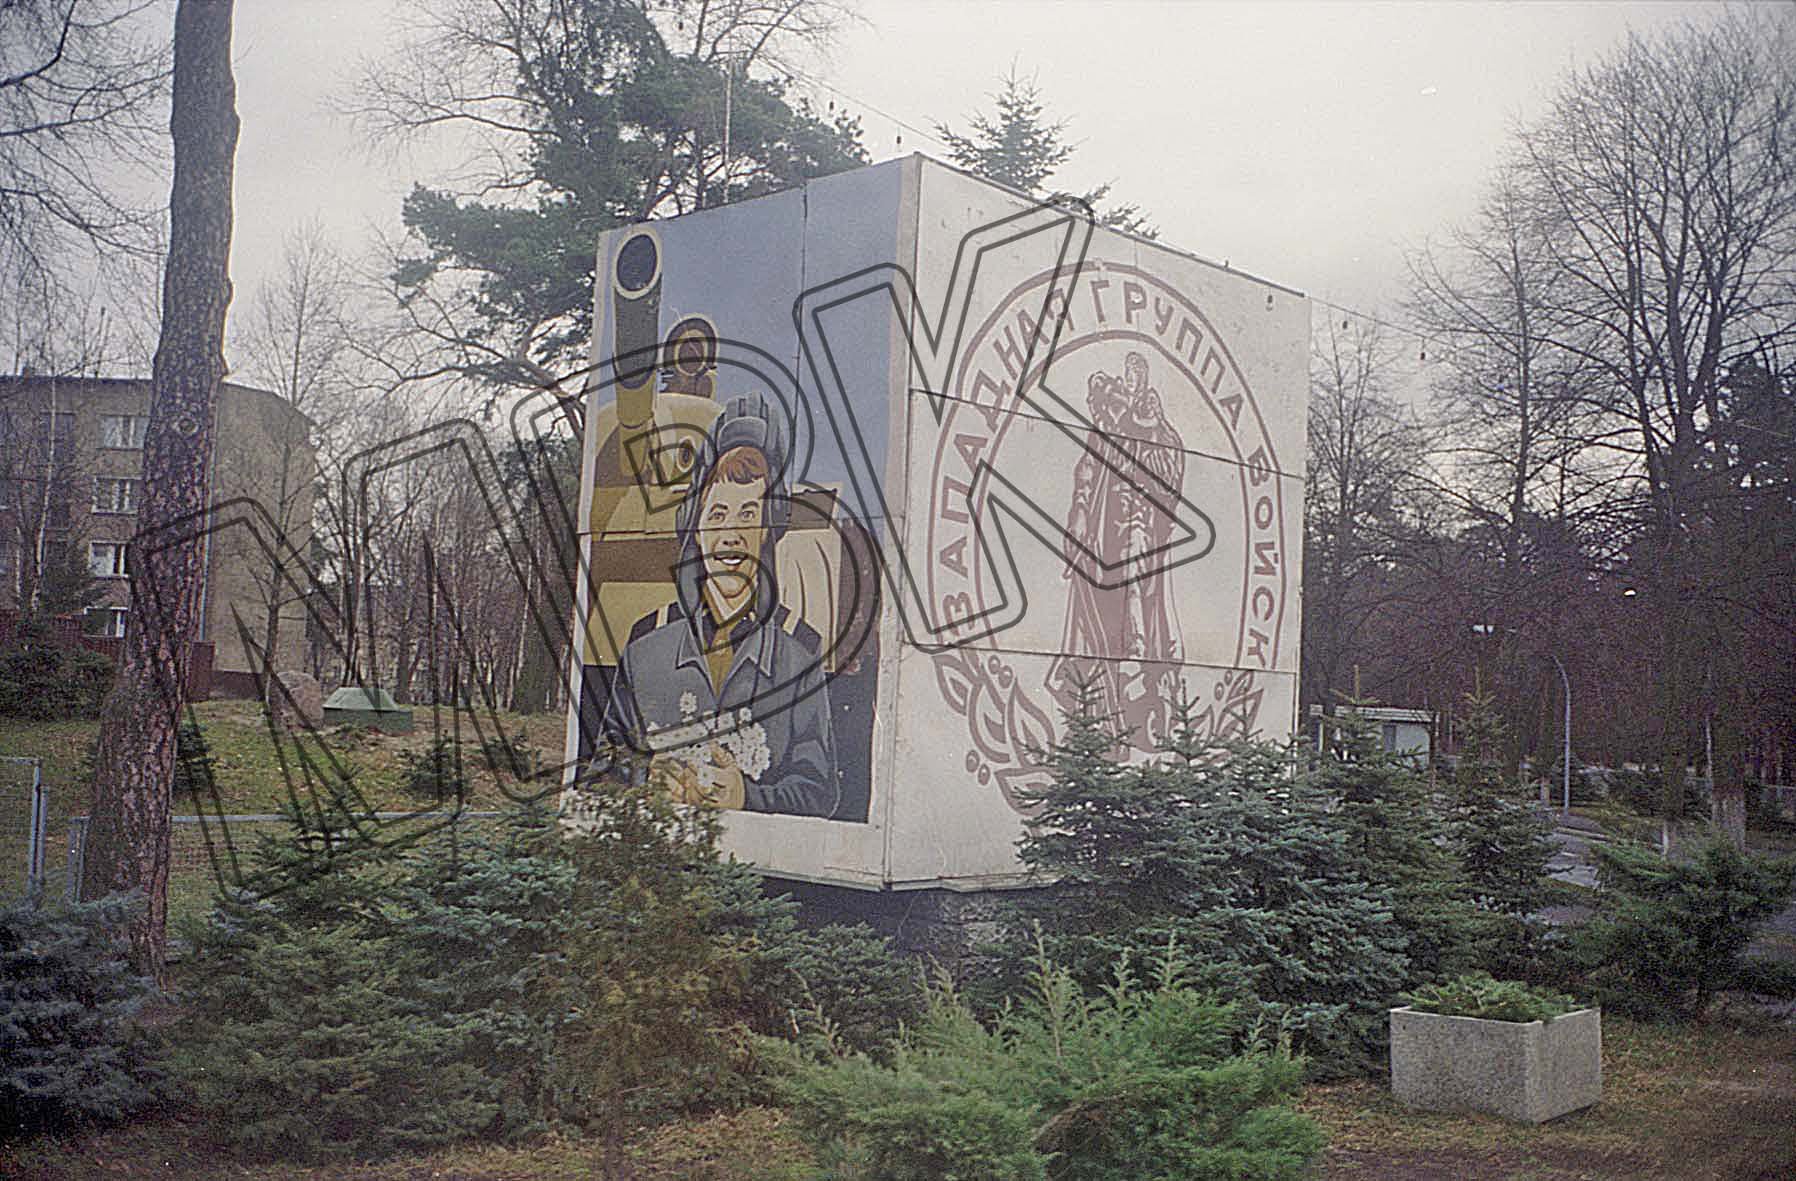 Fotografie: Stellage mit Propagandatafel in einem Wohngebiet der Garnison, Wünsdorf, vermutlich 1994 (Museum Berlin-Karlshorst RR-P)